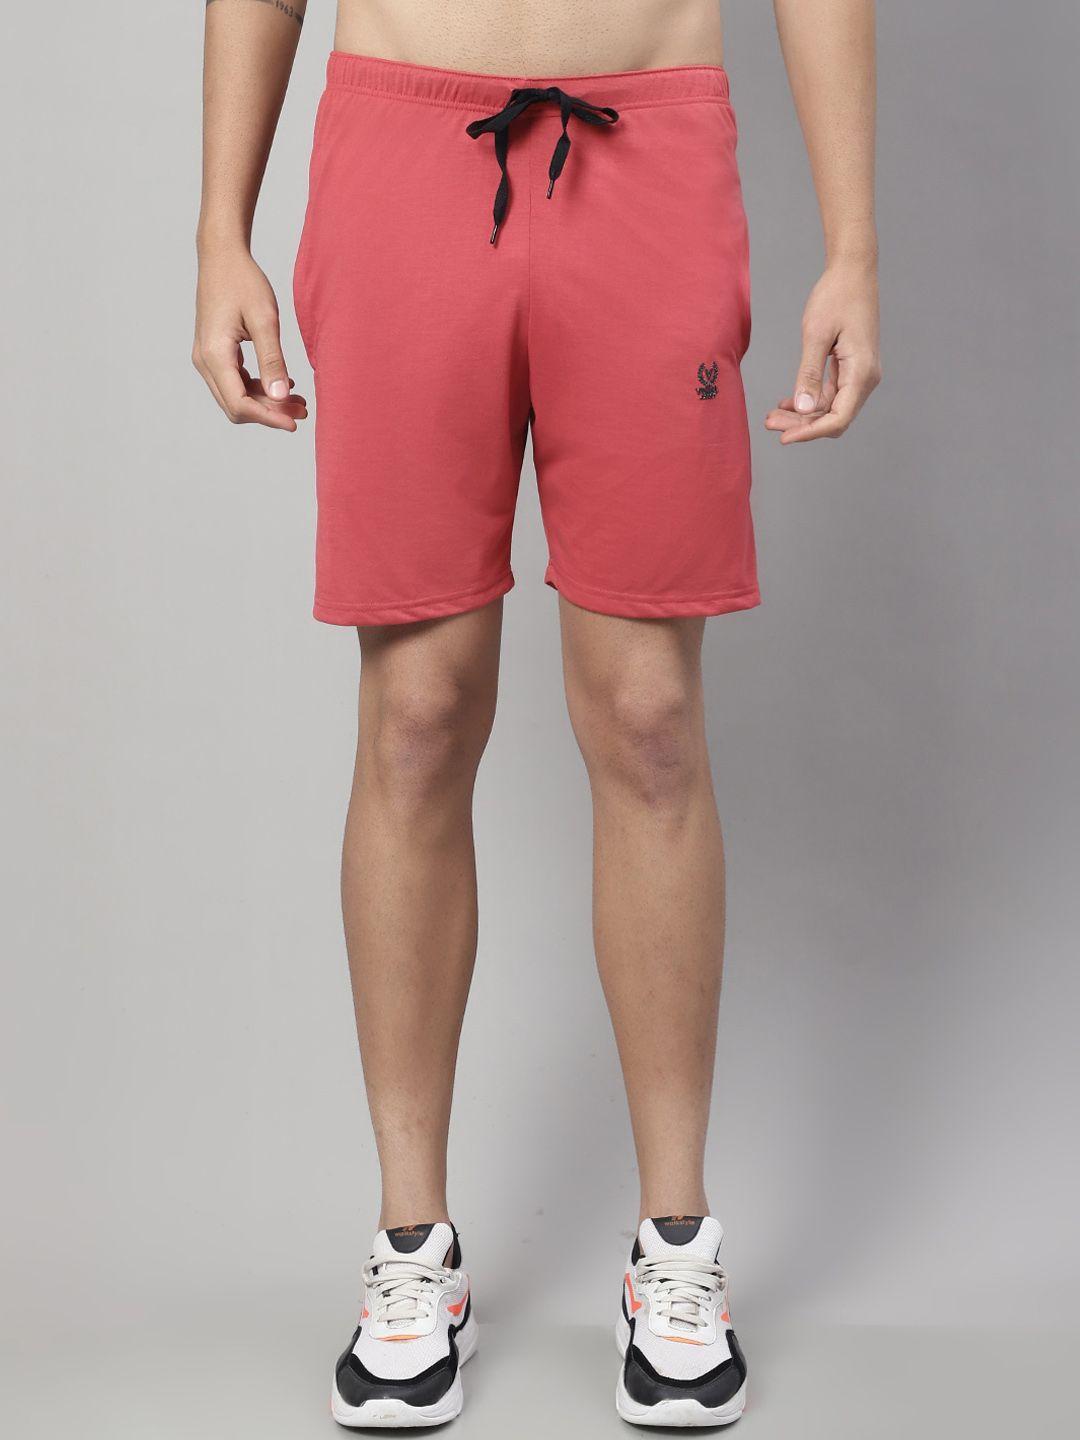 vimal jonney men mid-rise sports shorts